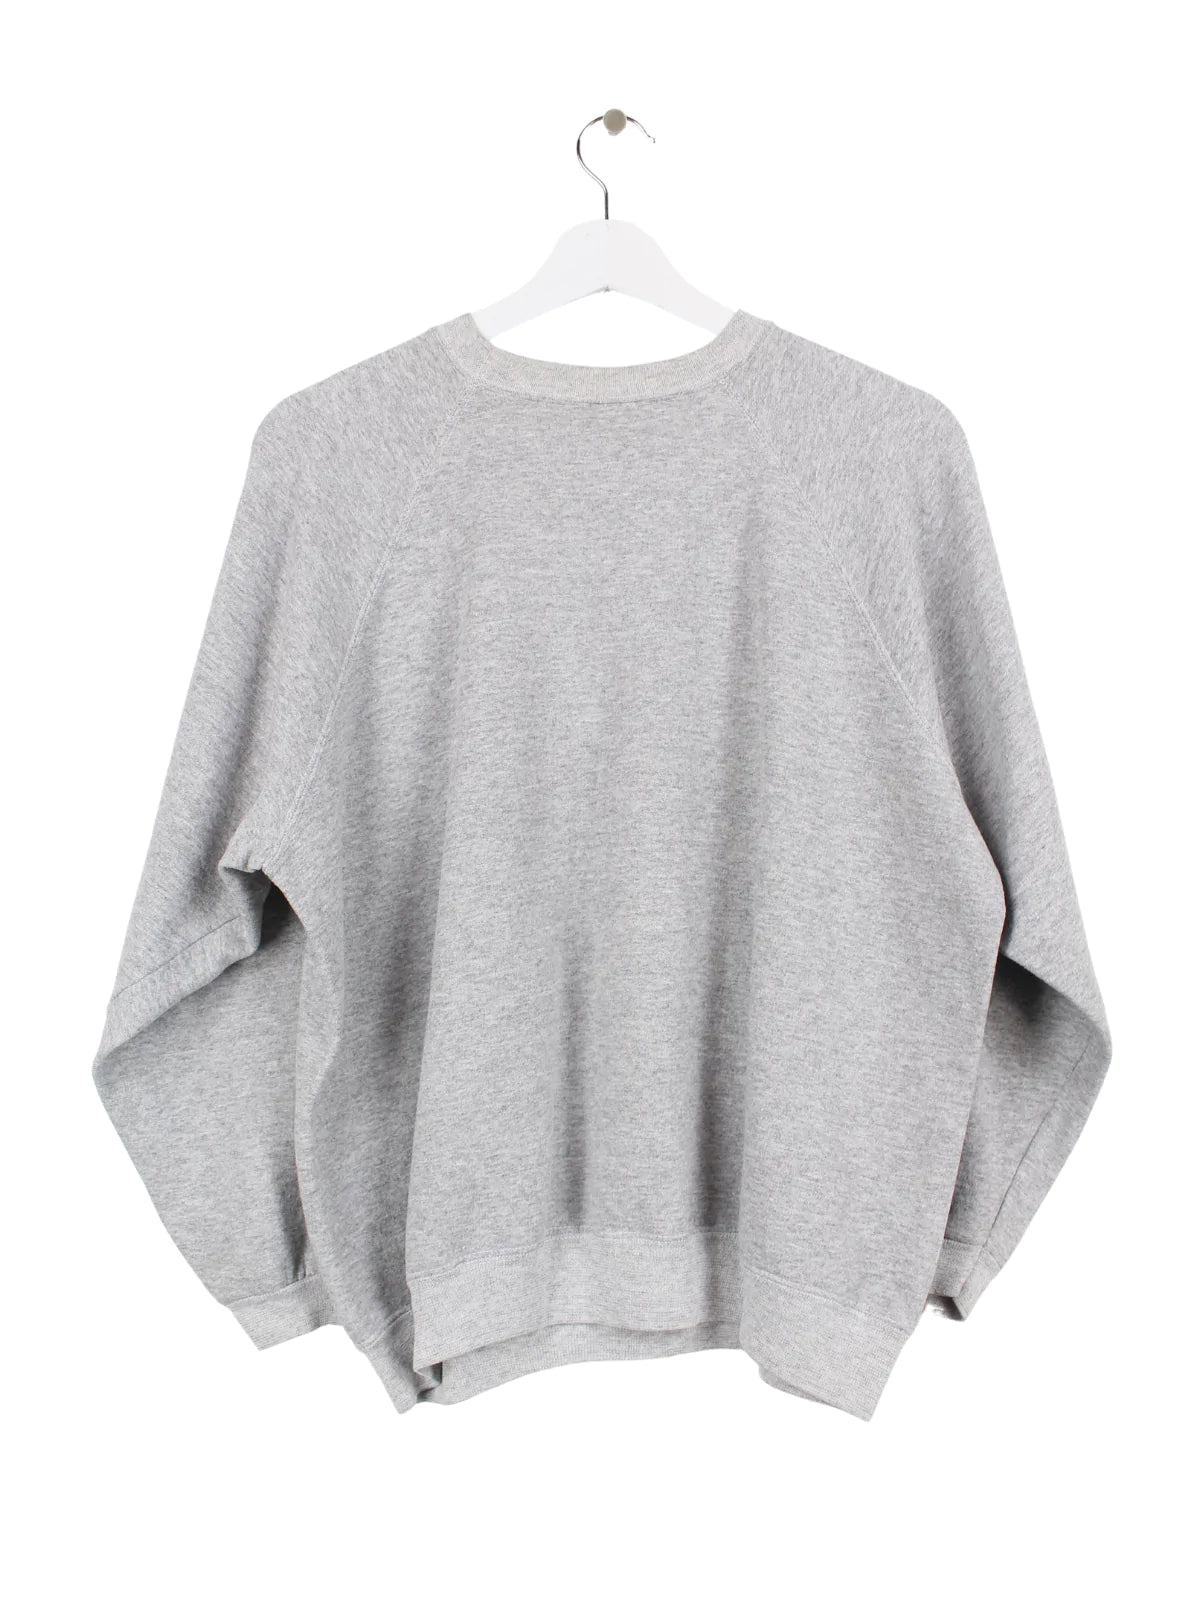 Gänse Print Sweater Grau S